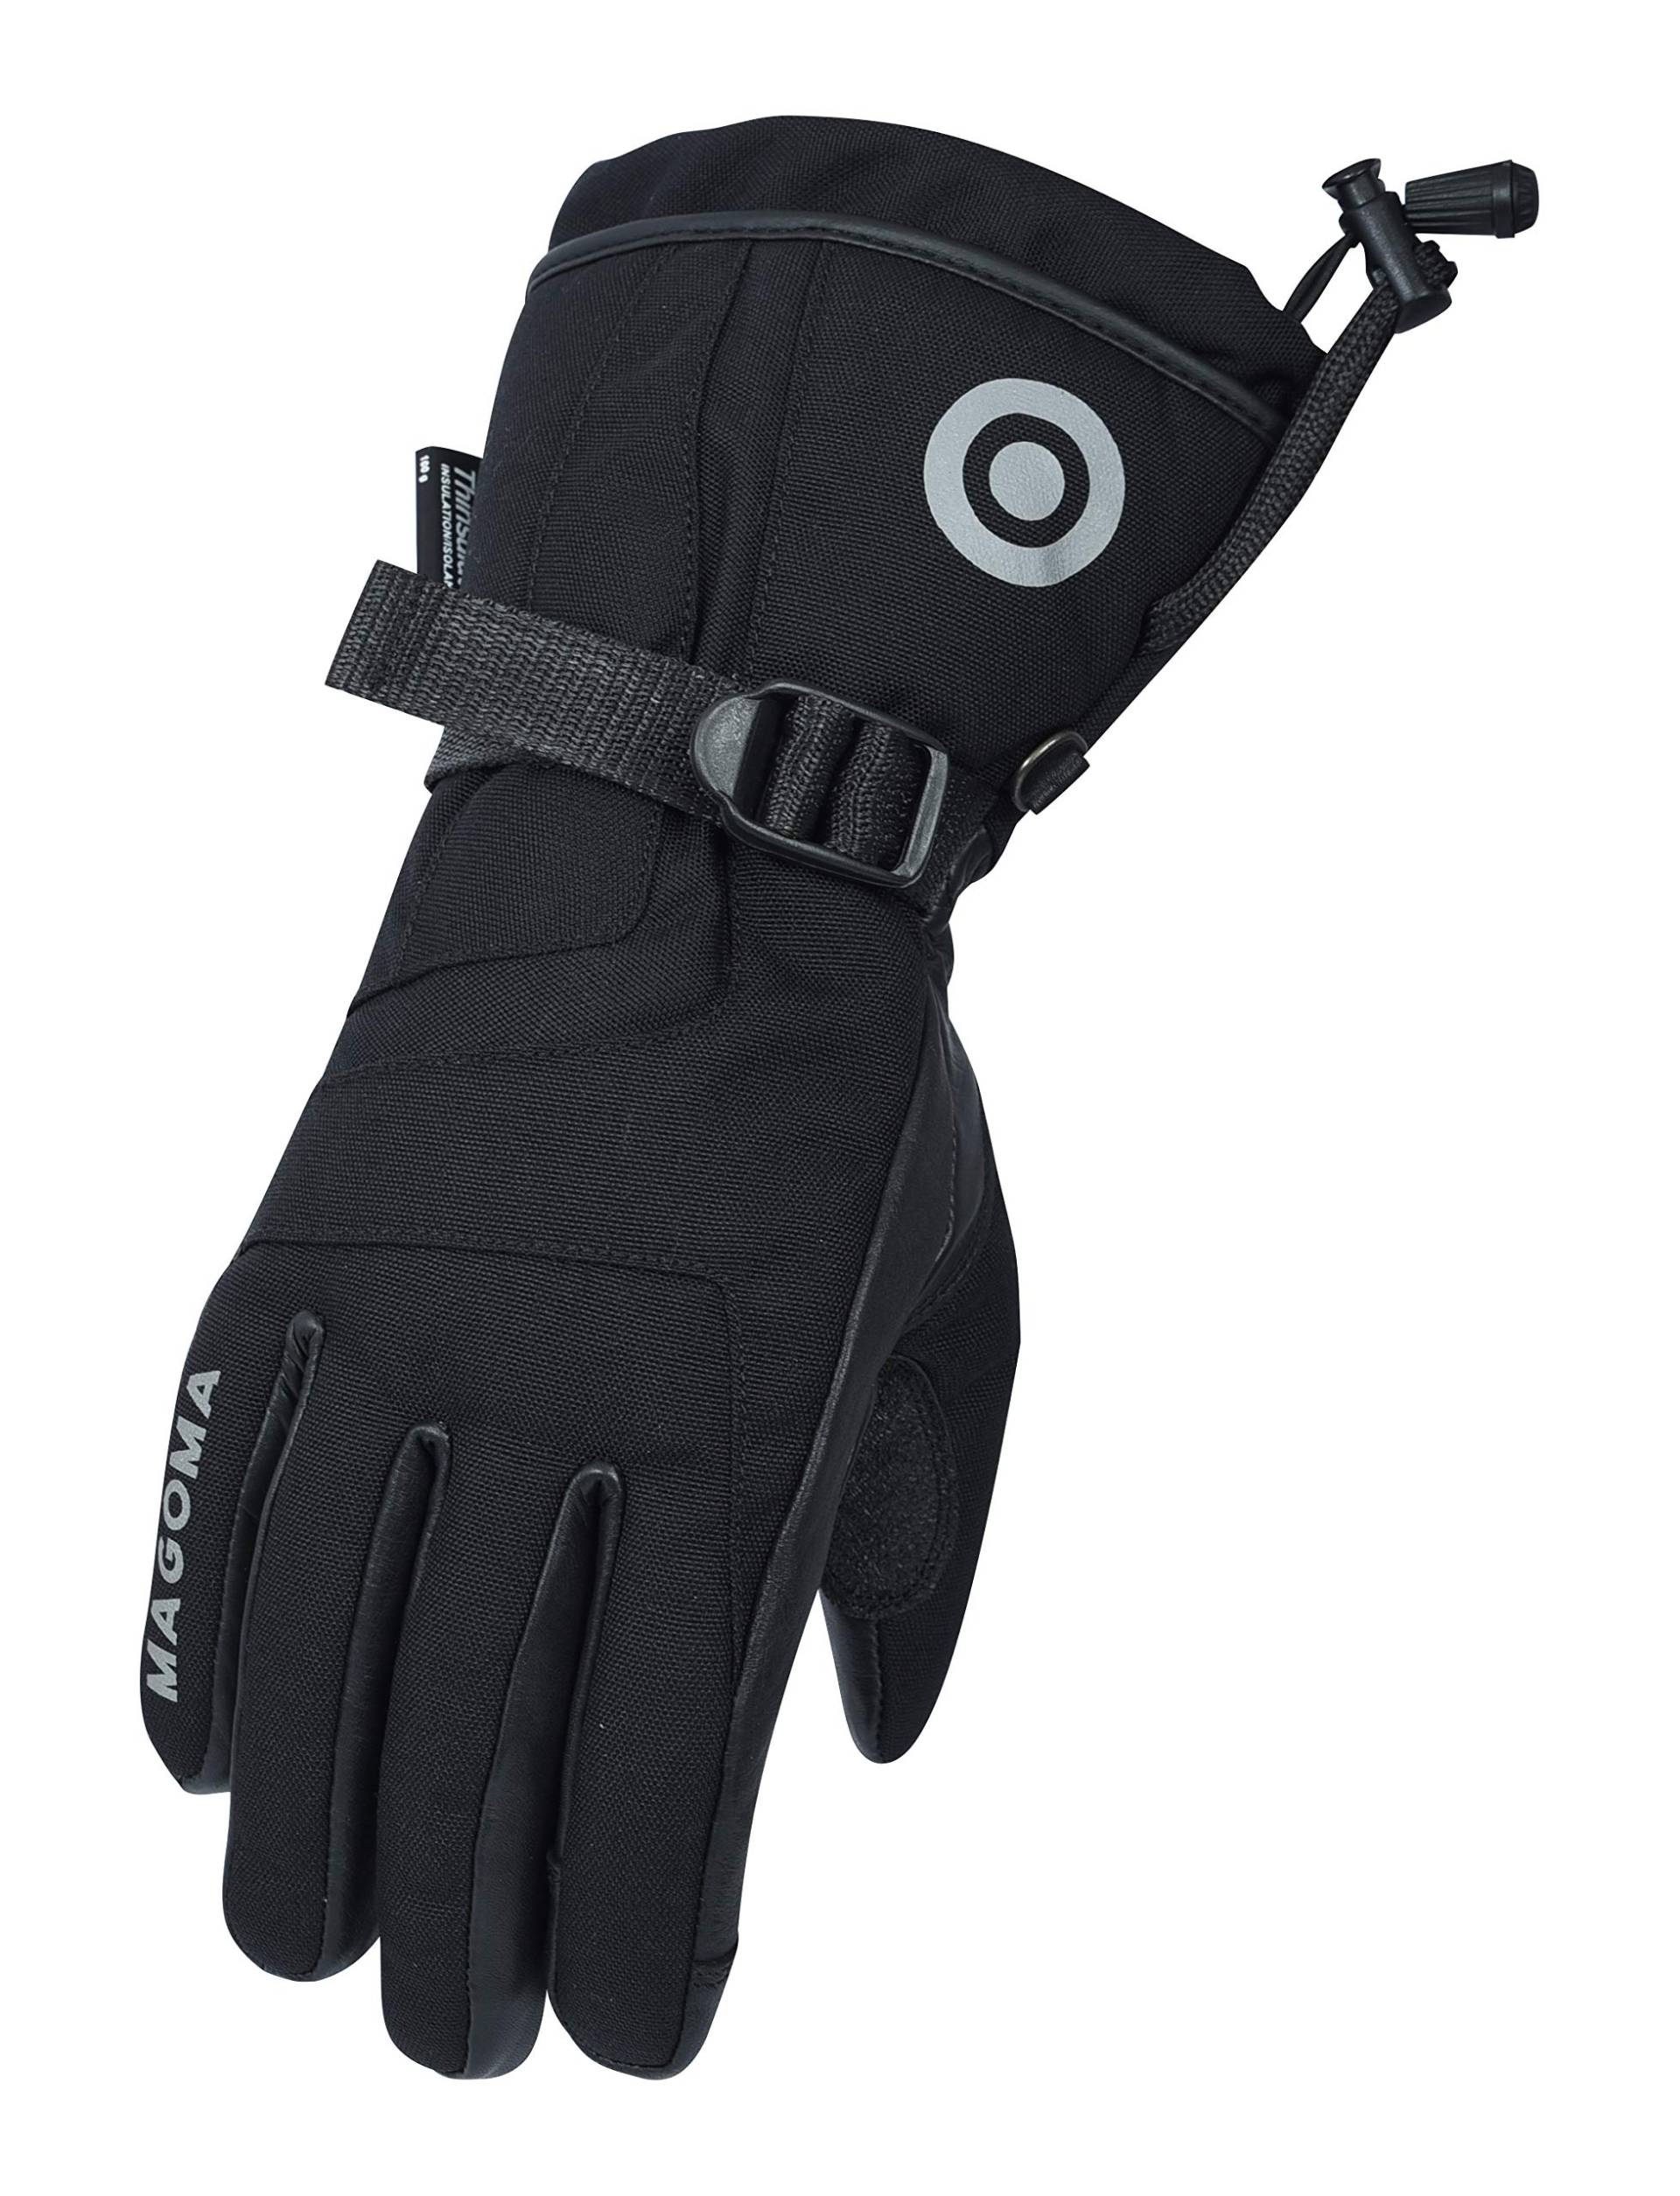 MAGOMA Bowery Handschuhe in 3M Thinsulate-Hipora Motorradhandschuhen, Schwarz, S. von MAGOMA